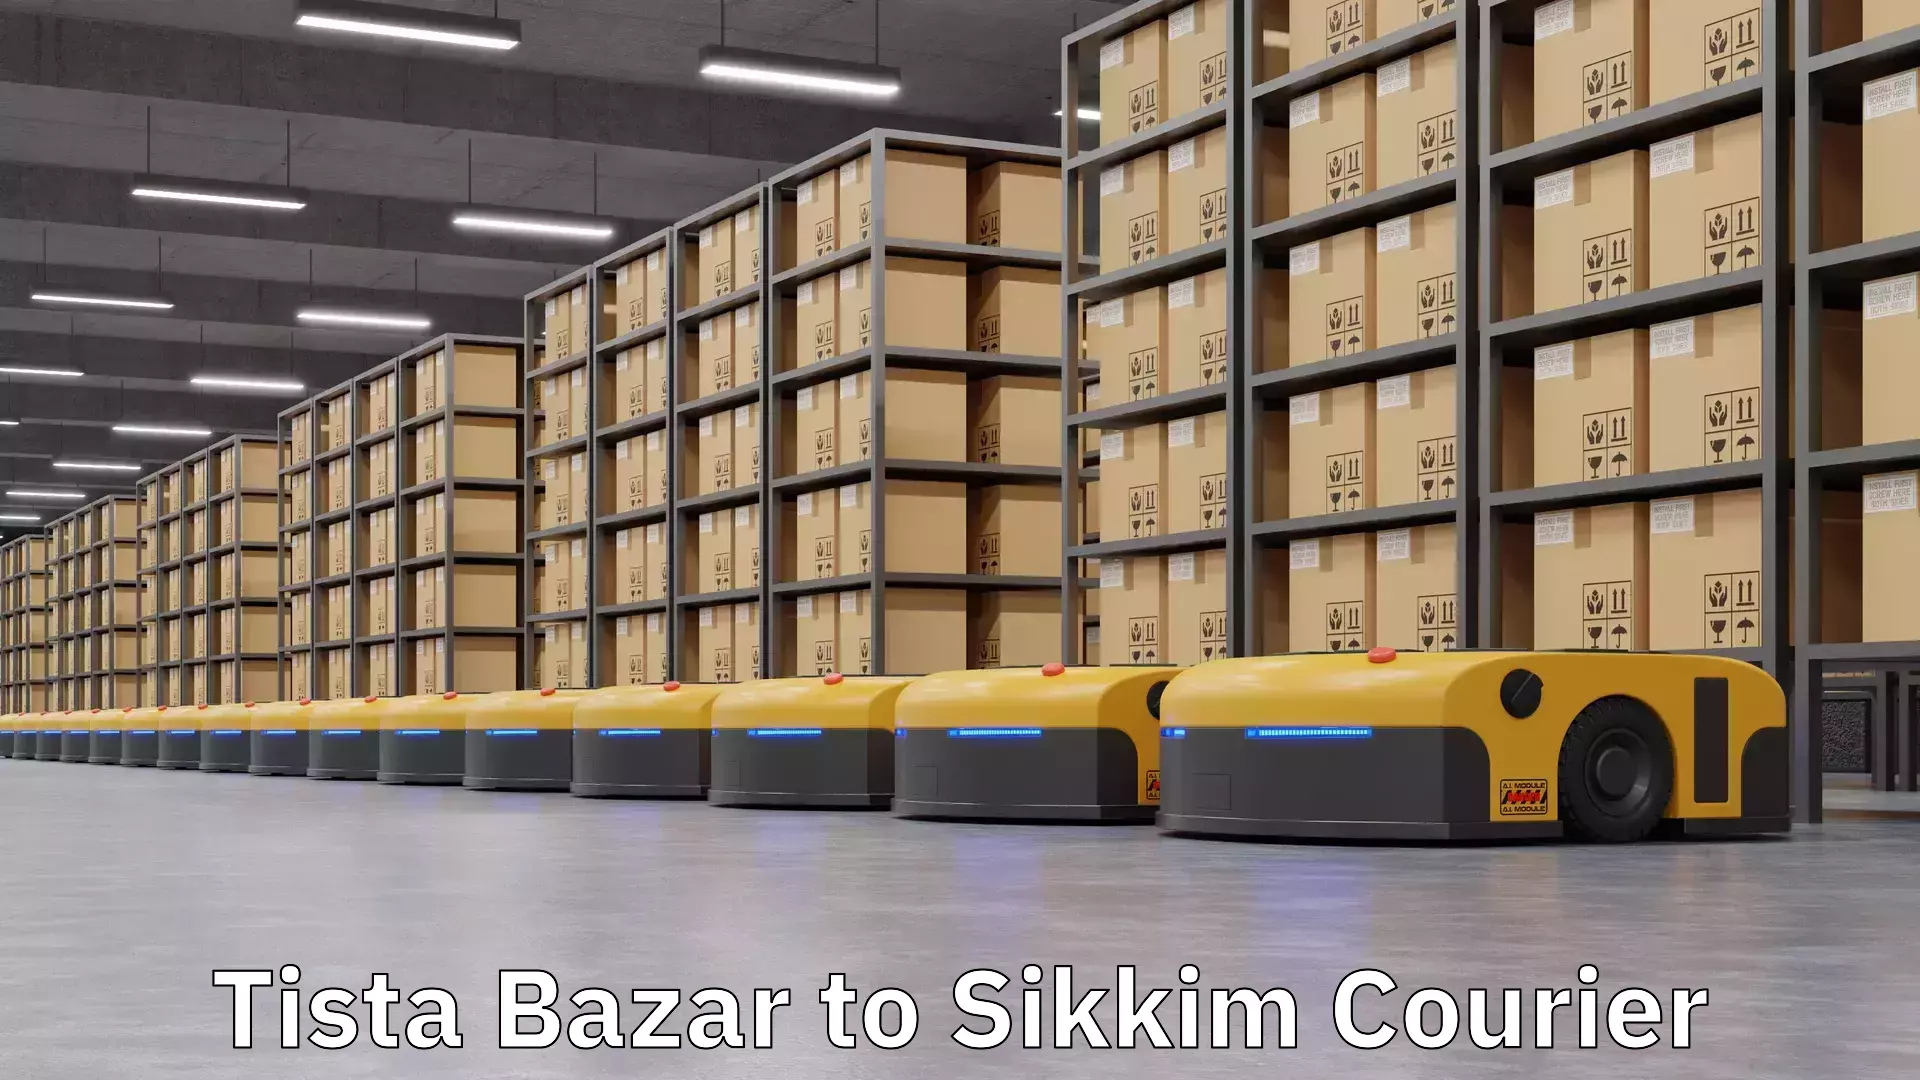 Efficient parcel service Tista Bazar to Sikkim